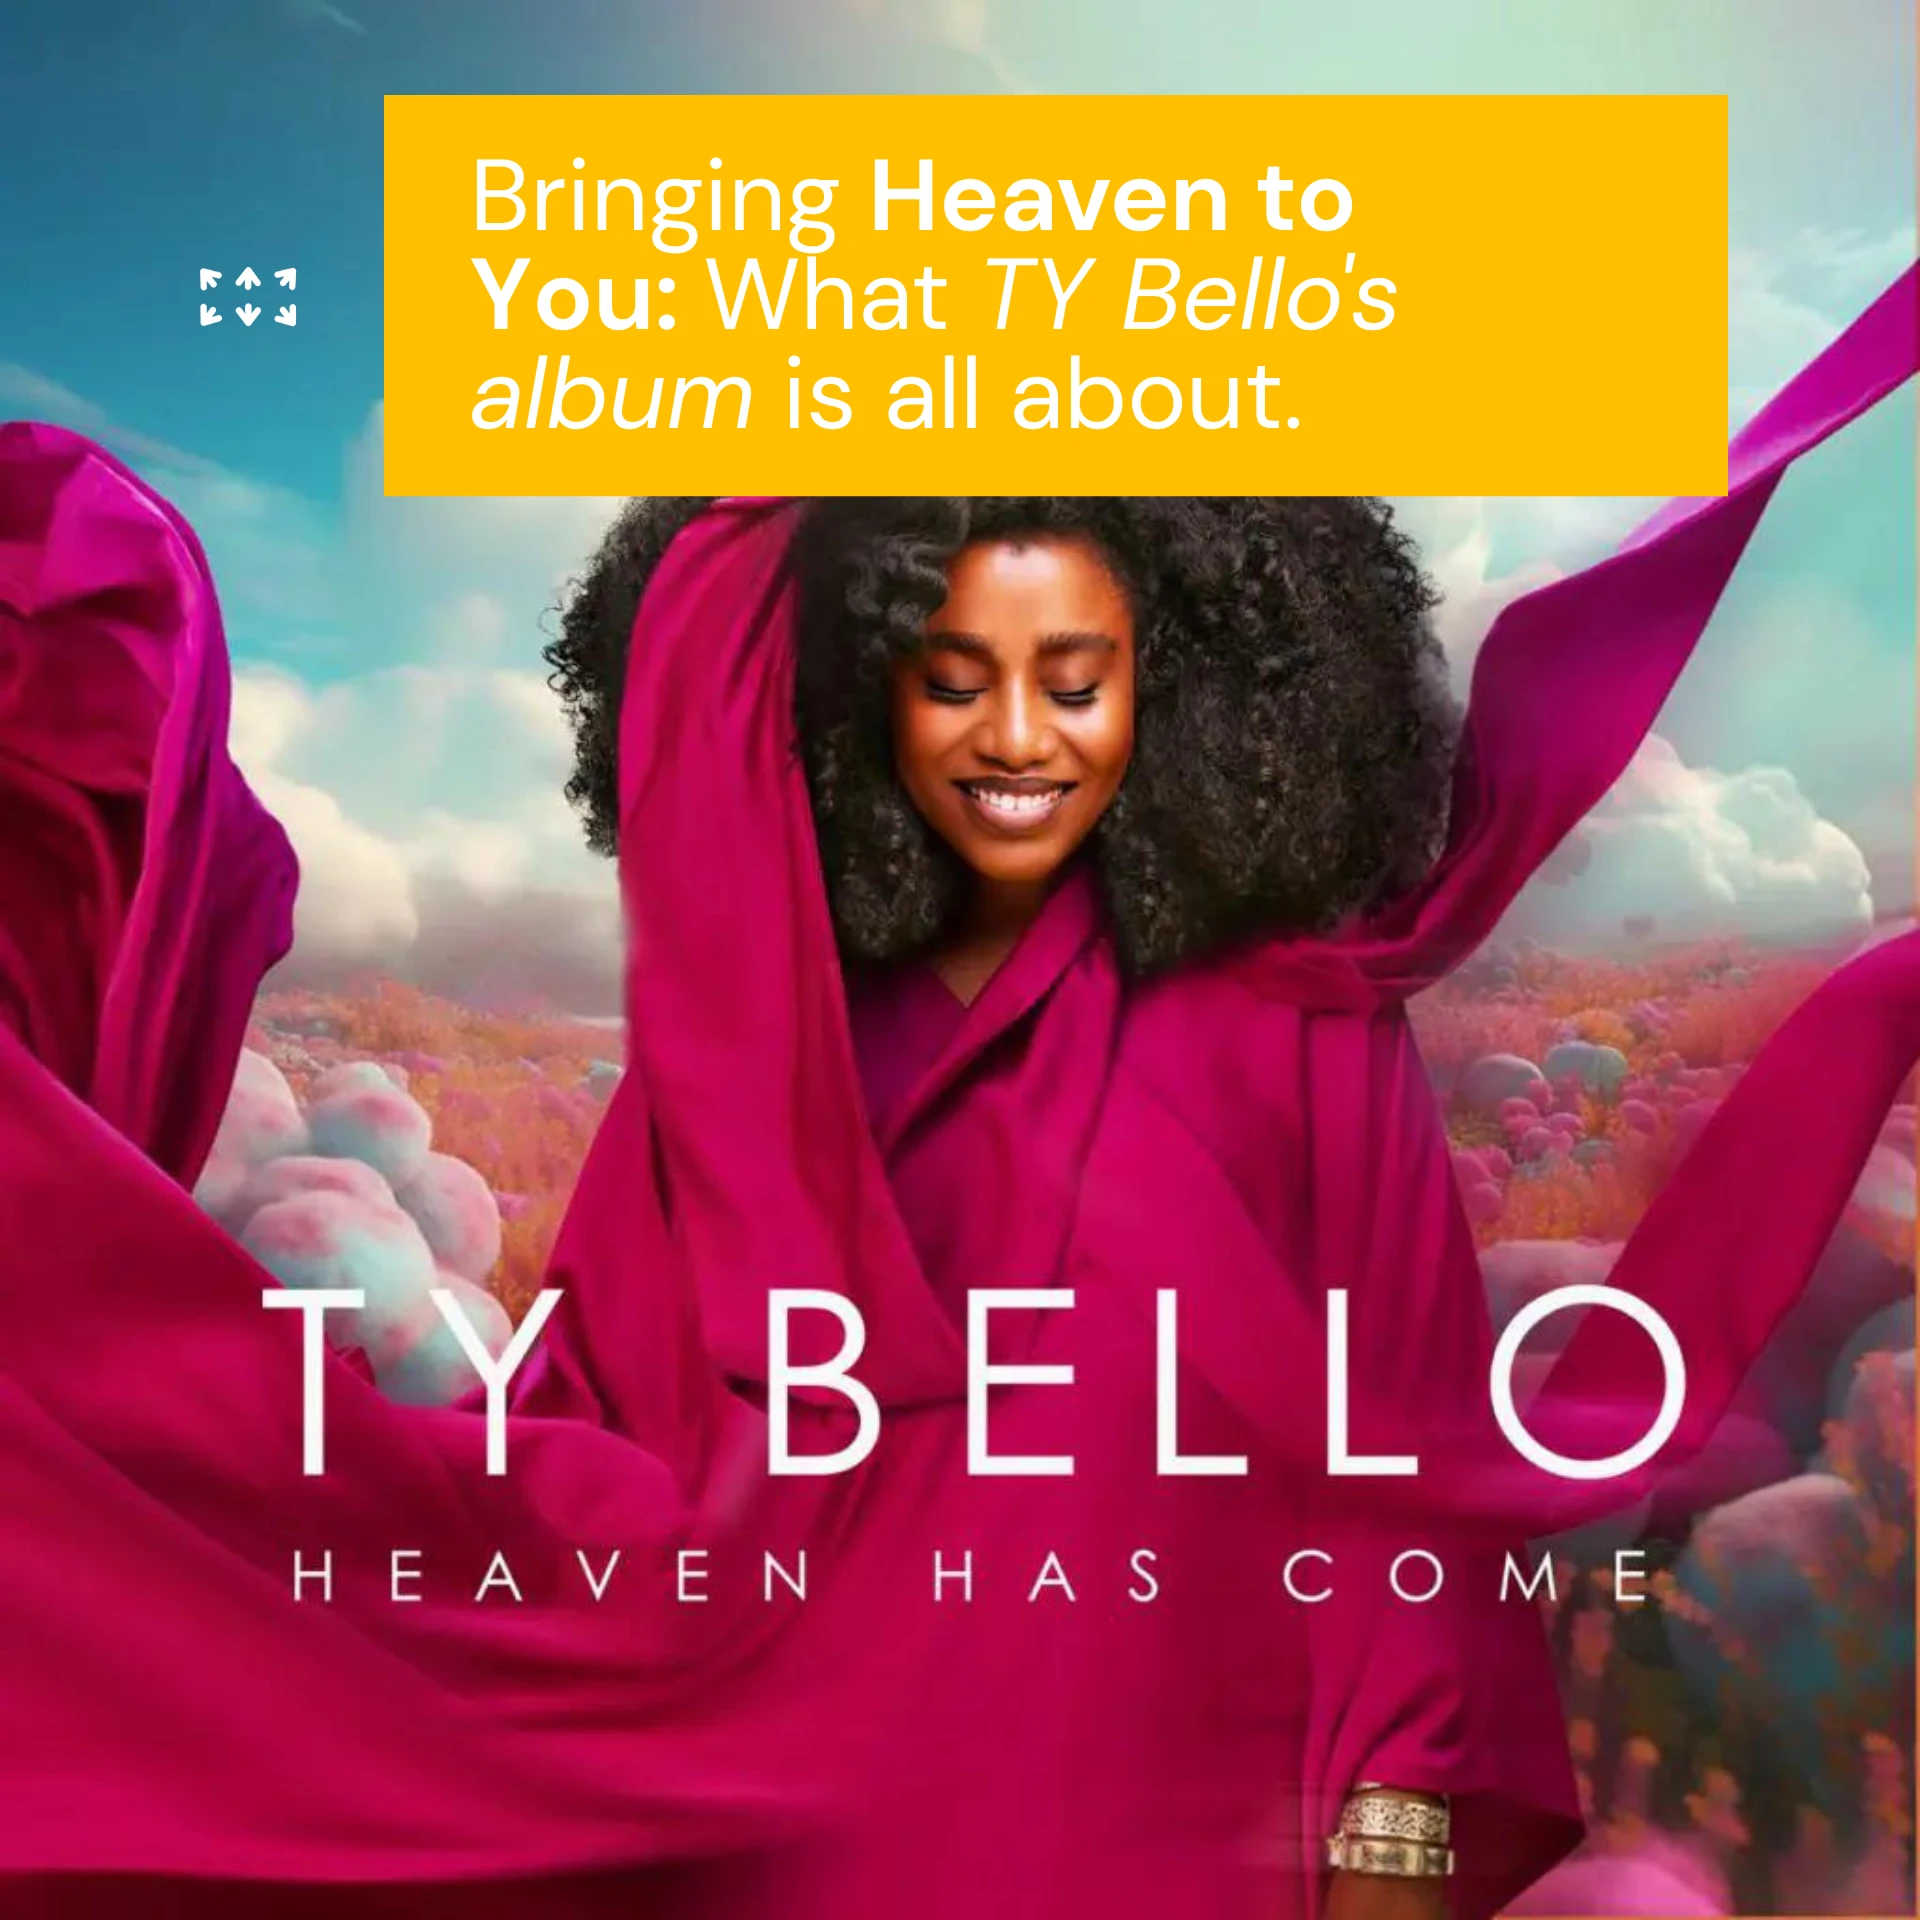 Heaven has come: A TY BELLO'S album